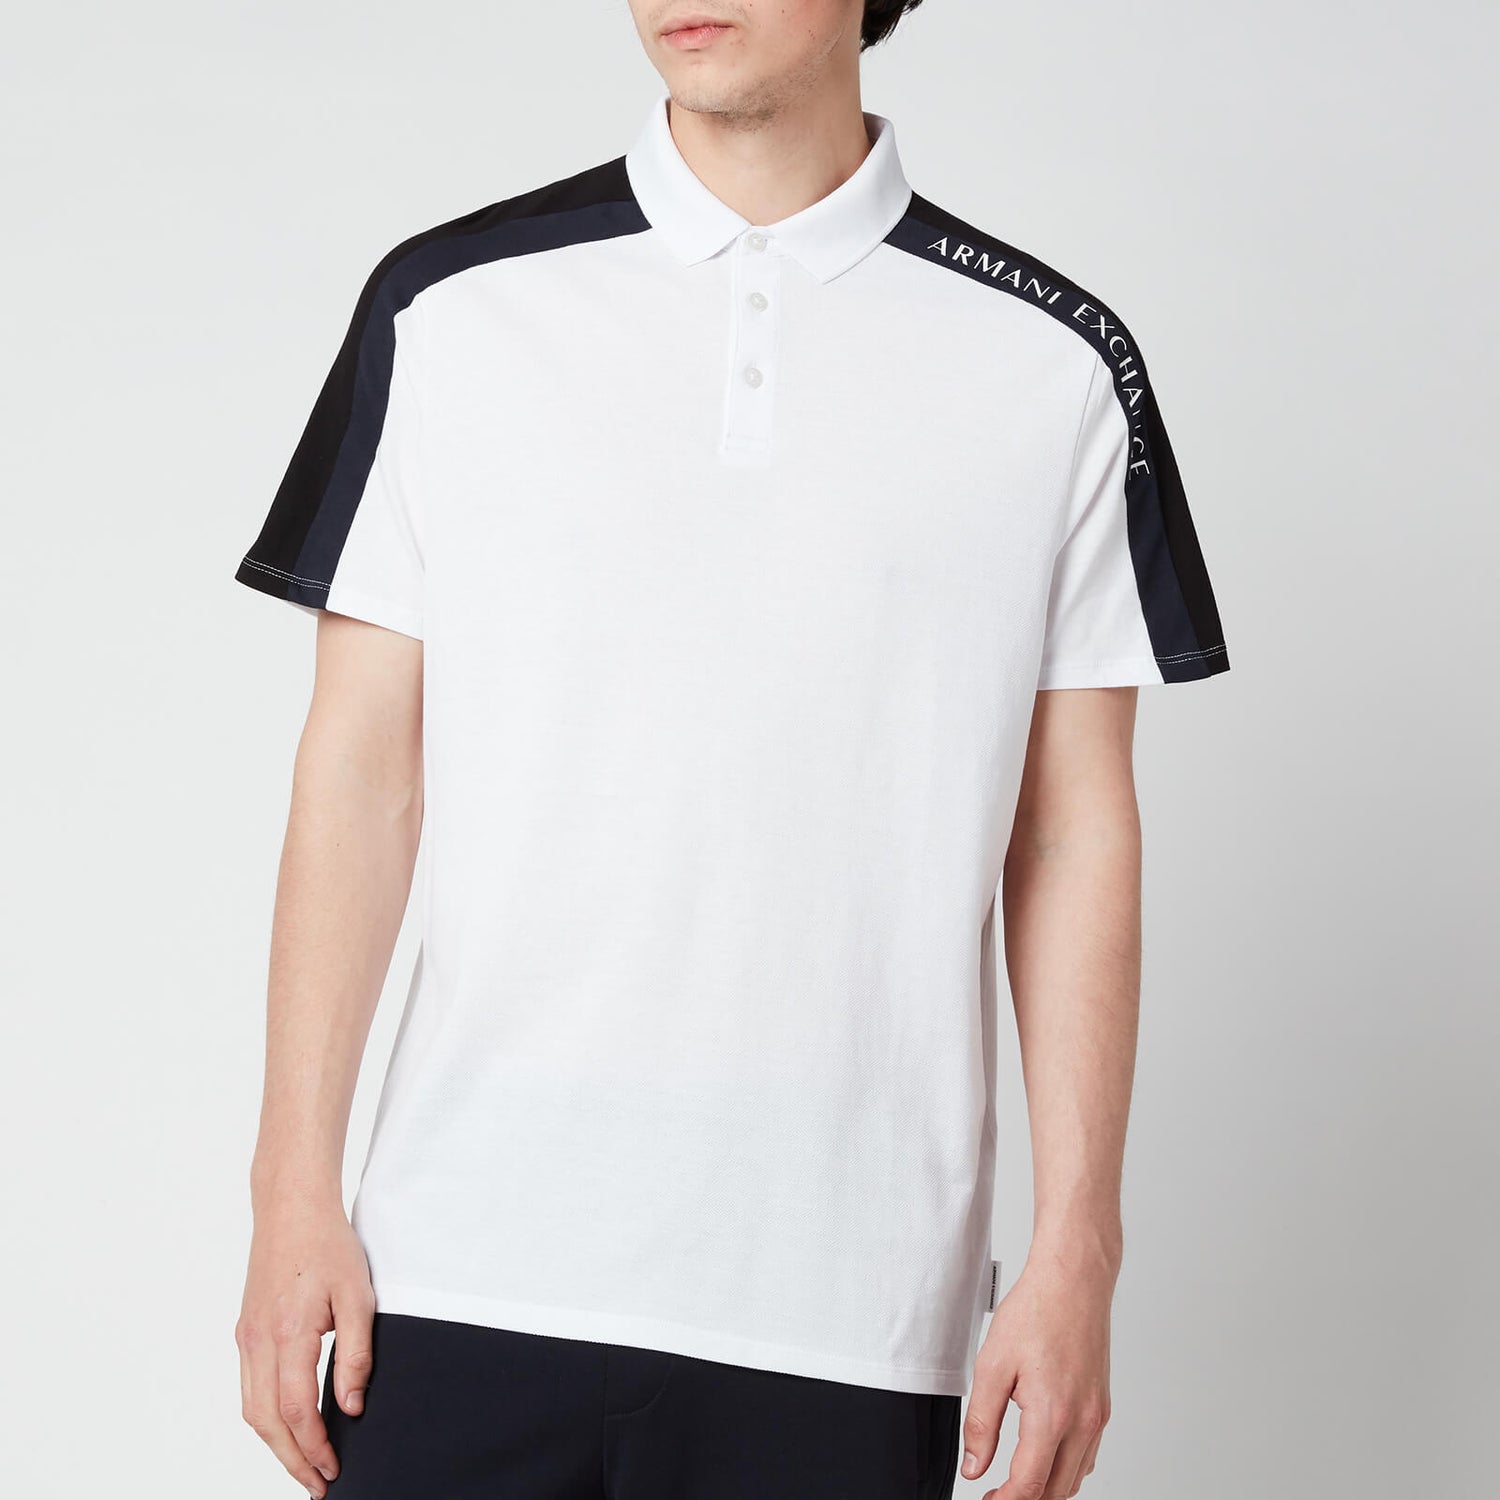 Armani Exchange Men's Sleeve Detail Polo Shirt - White/Black/Navy